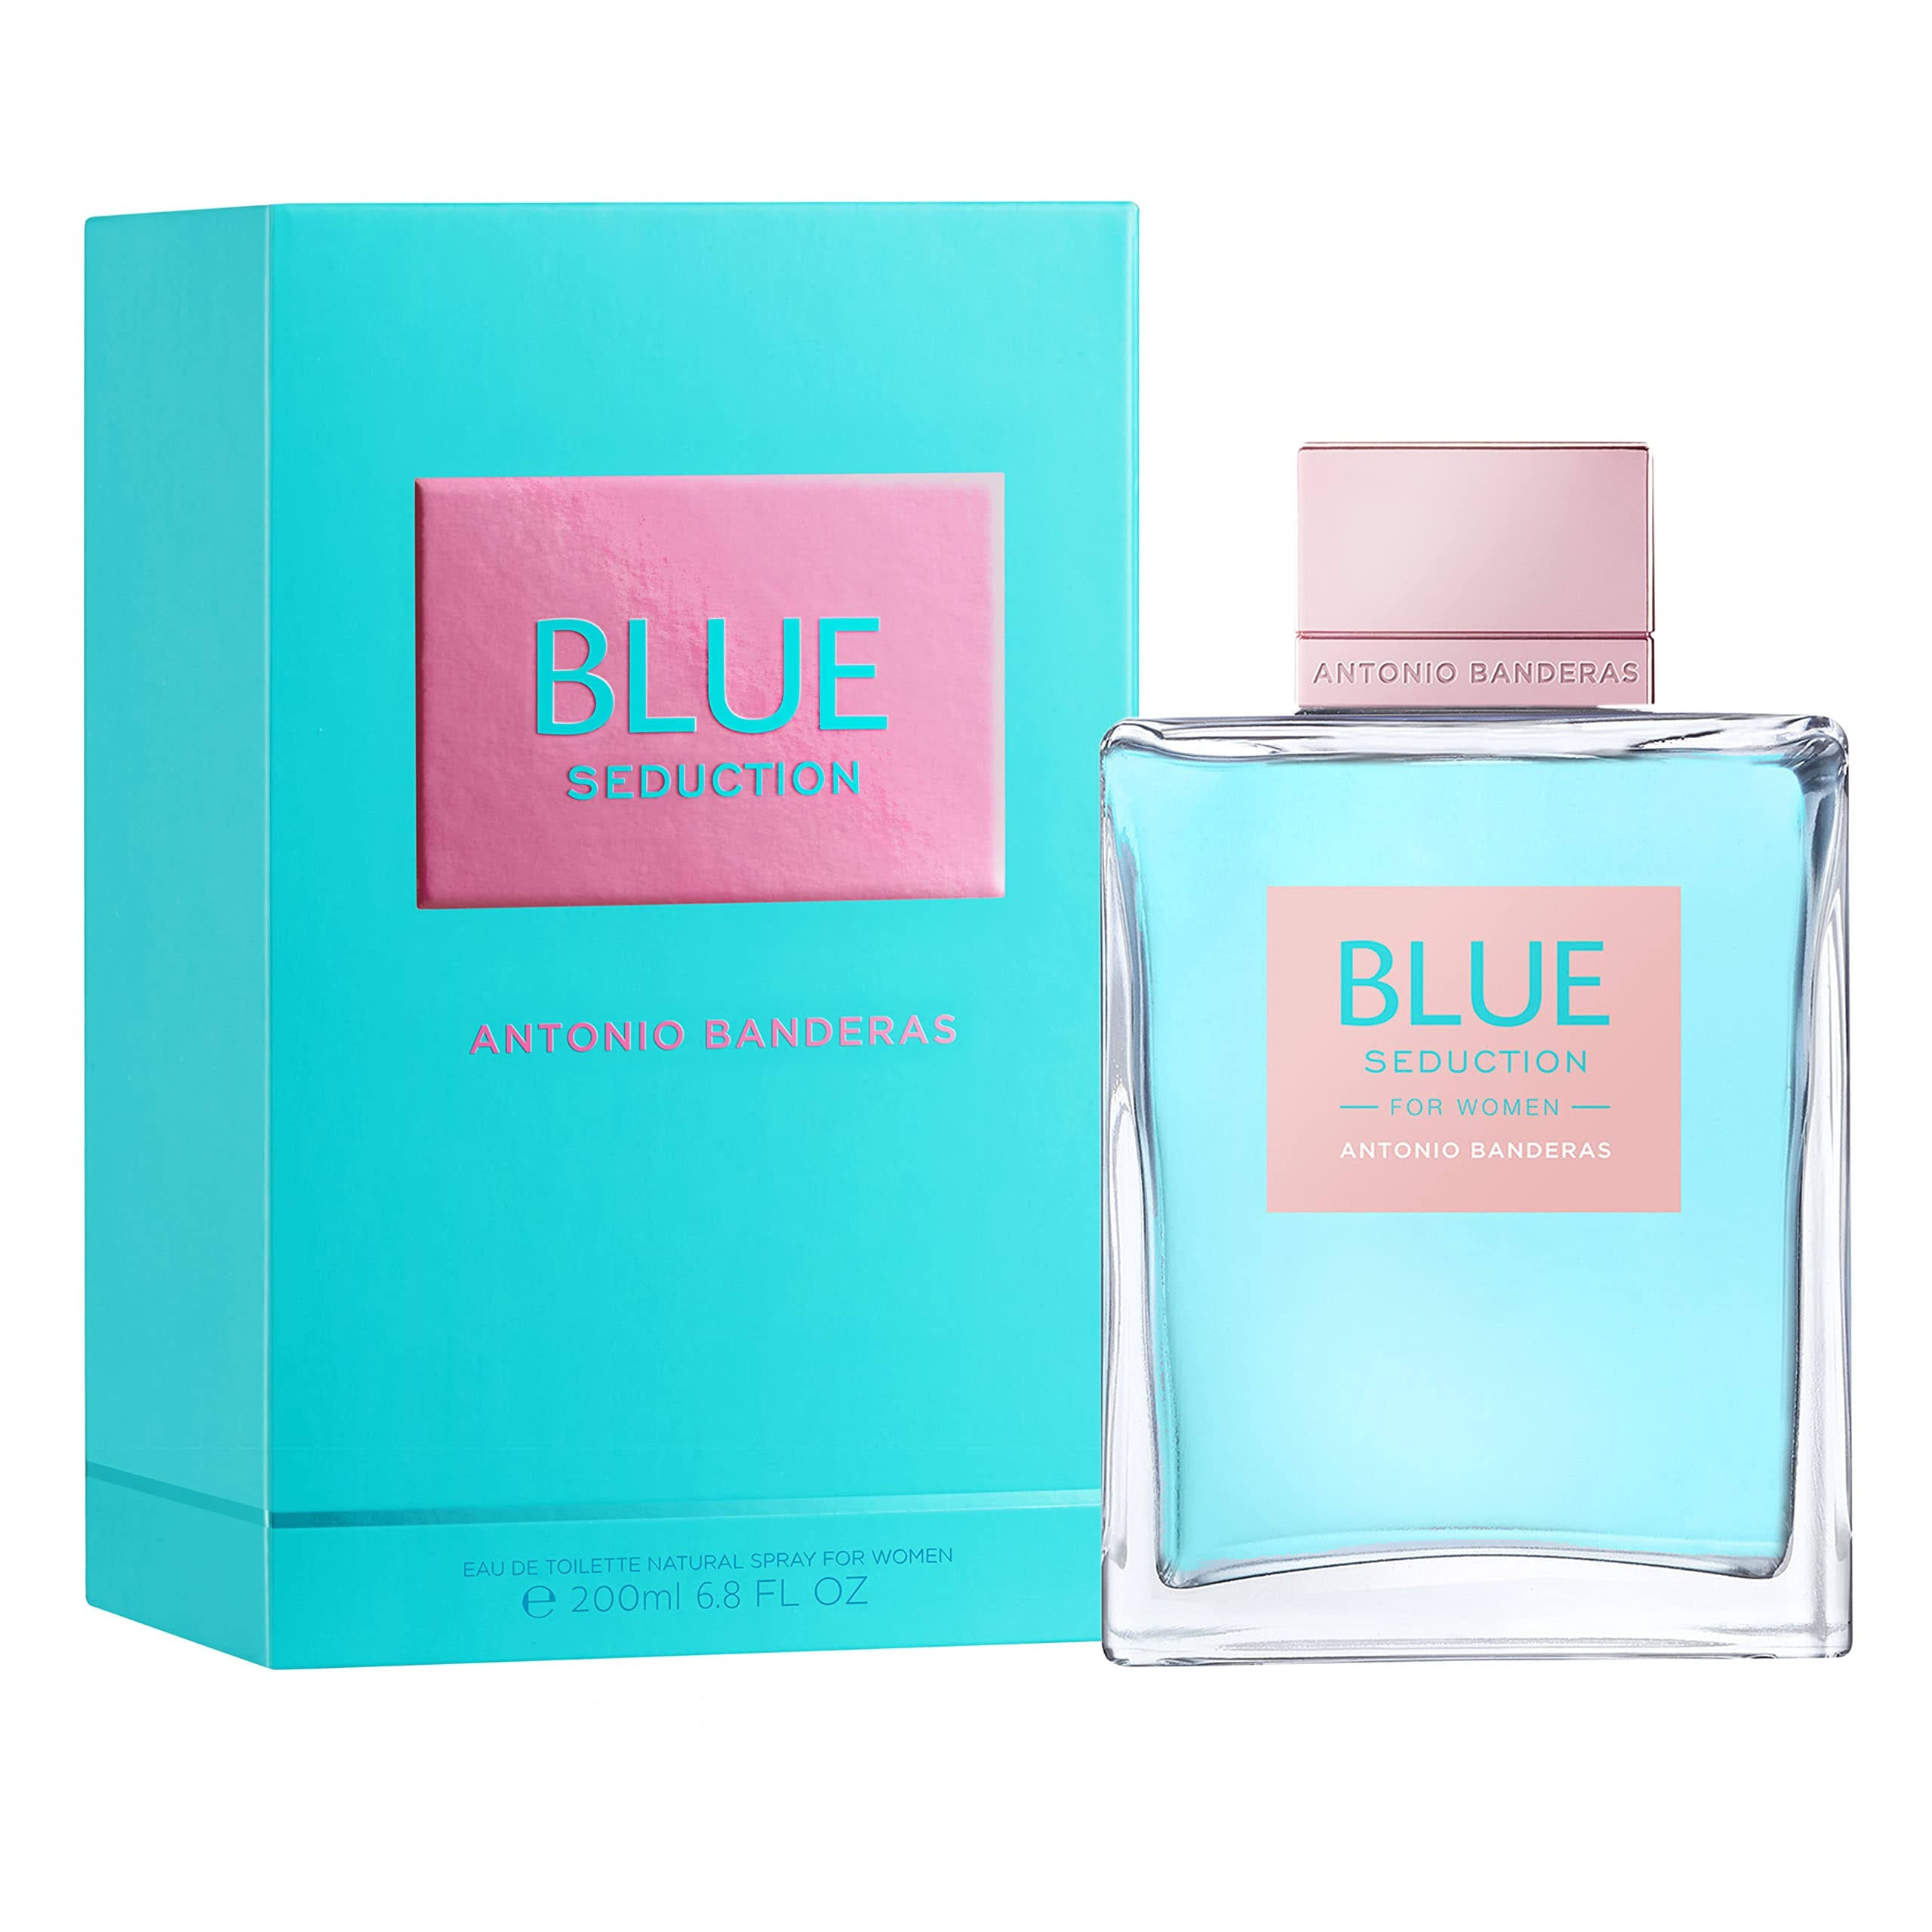 Blue Seduction by Antonio Banderas For Women 6.7 oz Eau De Toilette Spray